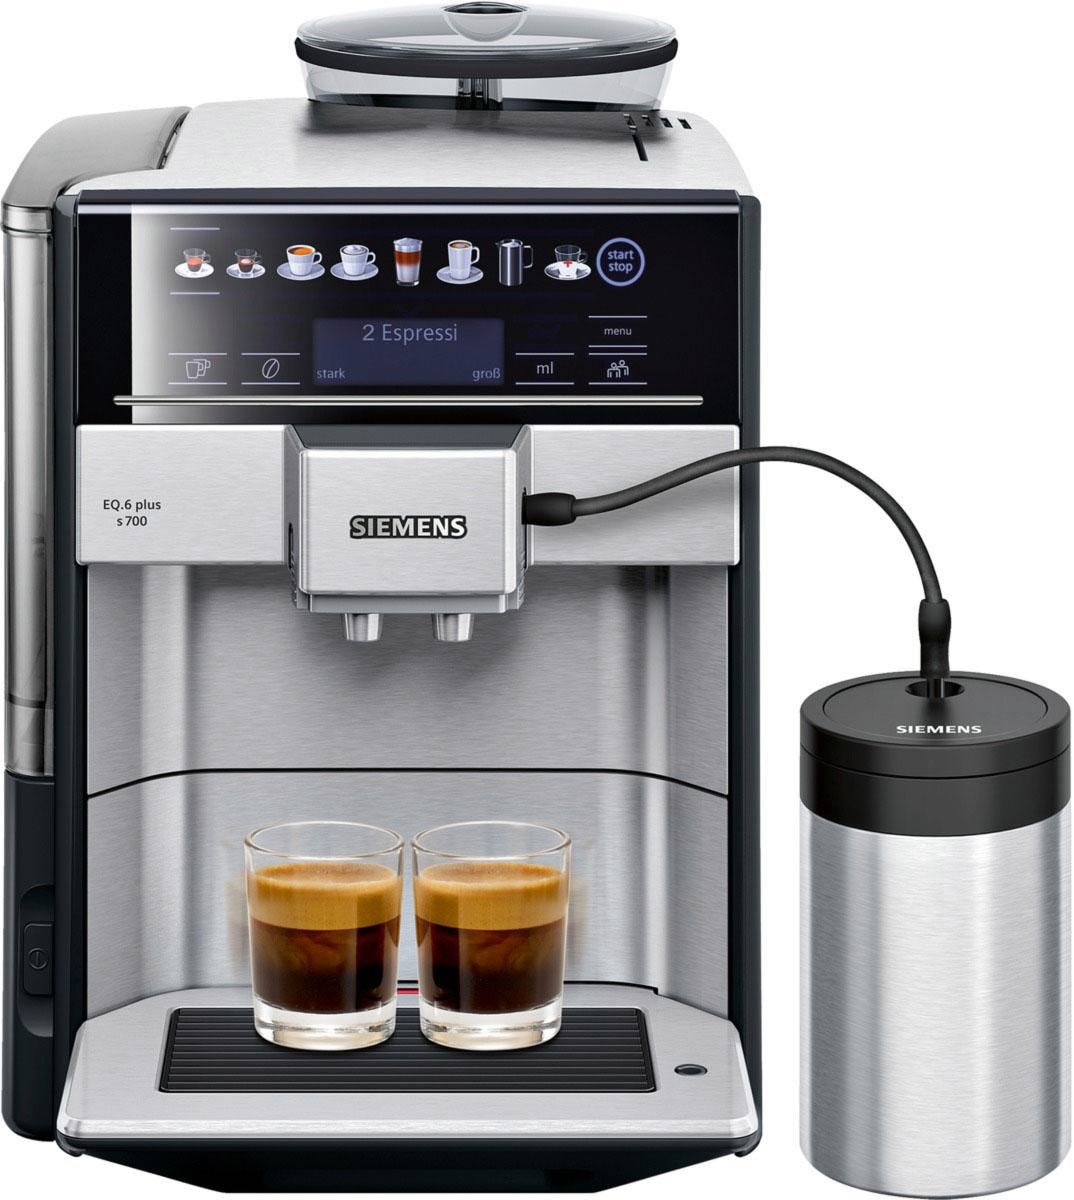 SIEMENS Kaffeevollautomat EQ.6 plus s700 bestellen Tank, Rechnung Scheibenmahlwerk 1,7l auf TE657M03DE